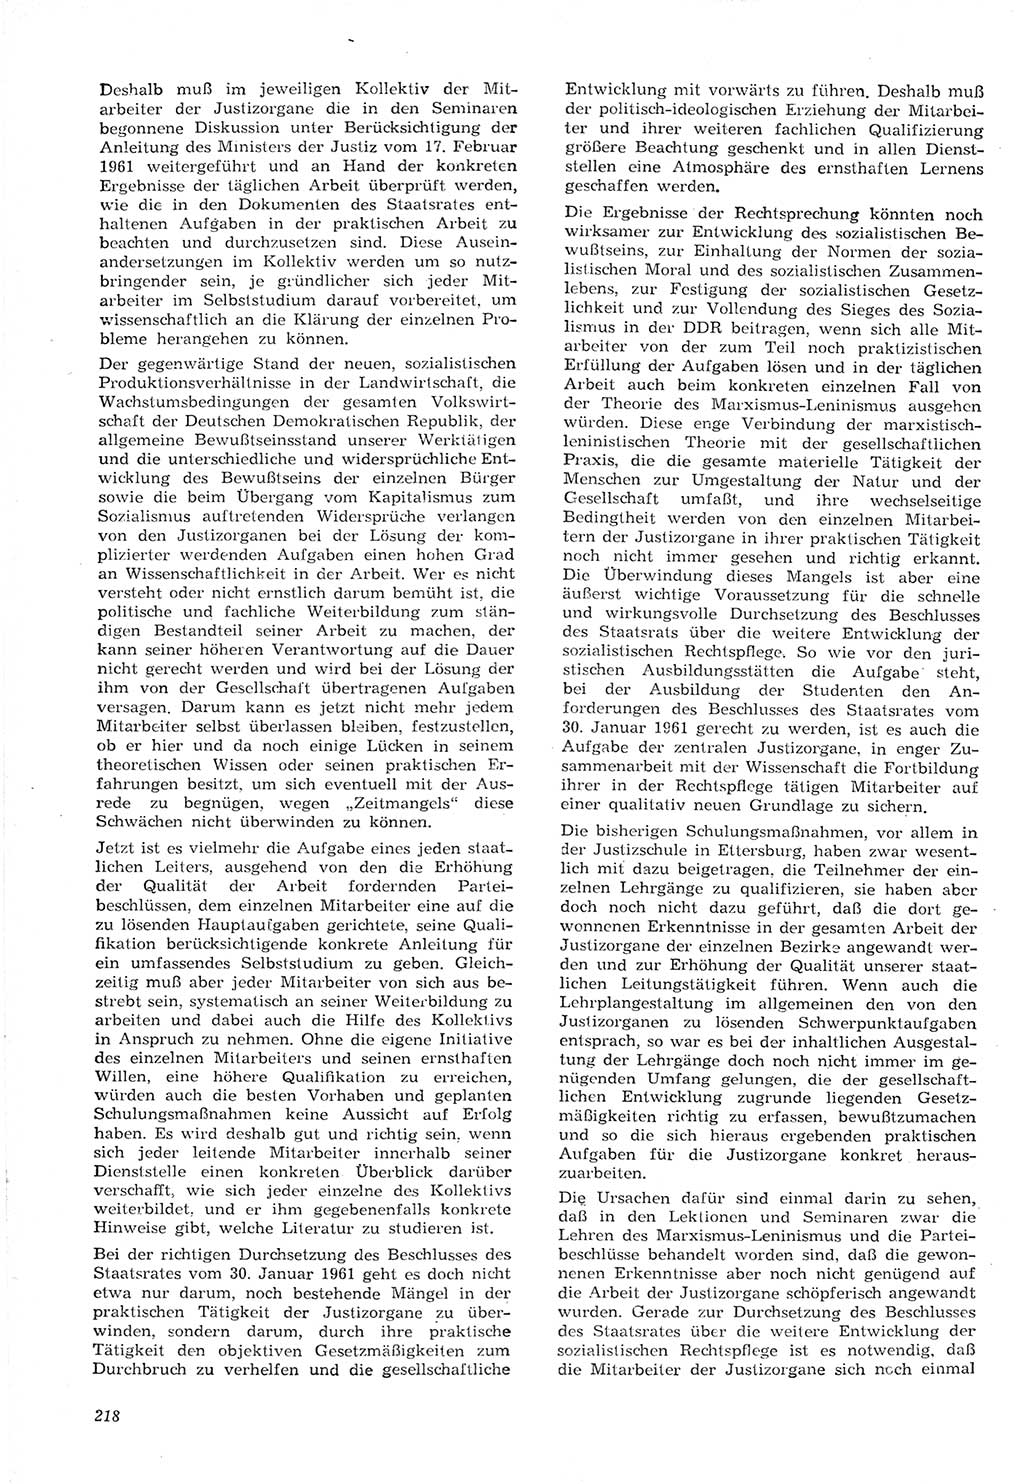 Neue Justiz (NJ), Zeitschrift für Recht und Rechtswissenschaft [Deutsche Demokratische Republik (DDR)], 15. Jahrgang 1961, Seite 218 (NJ DDR 1961, S. 218)